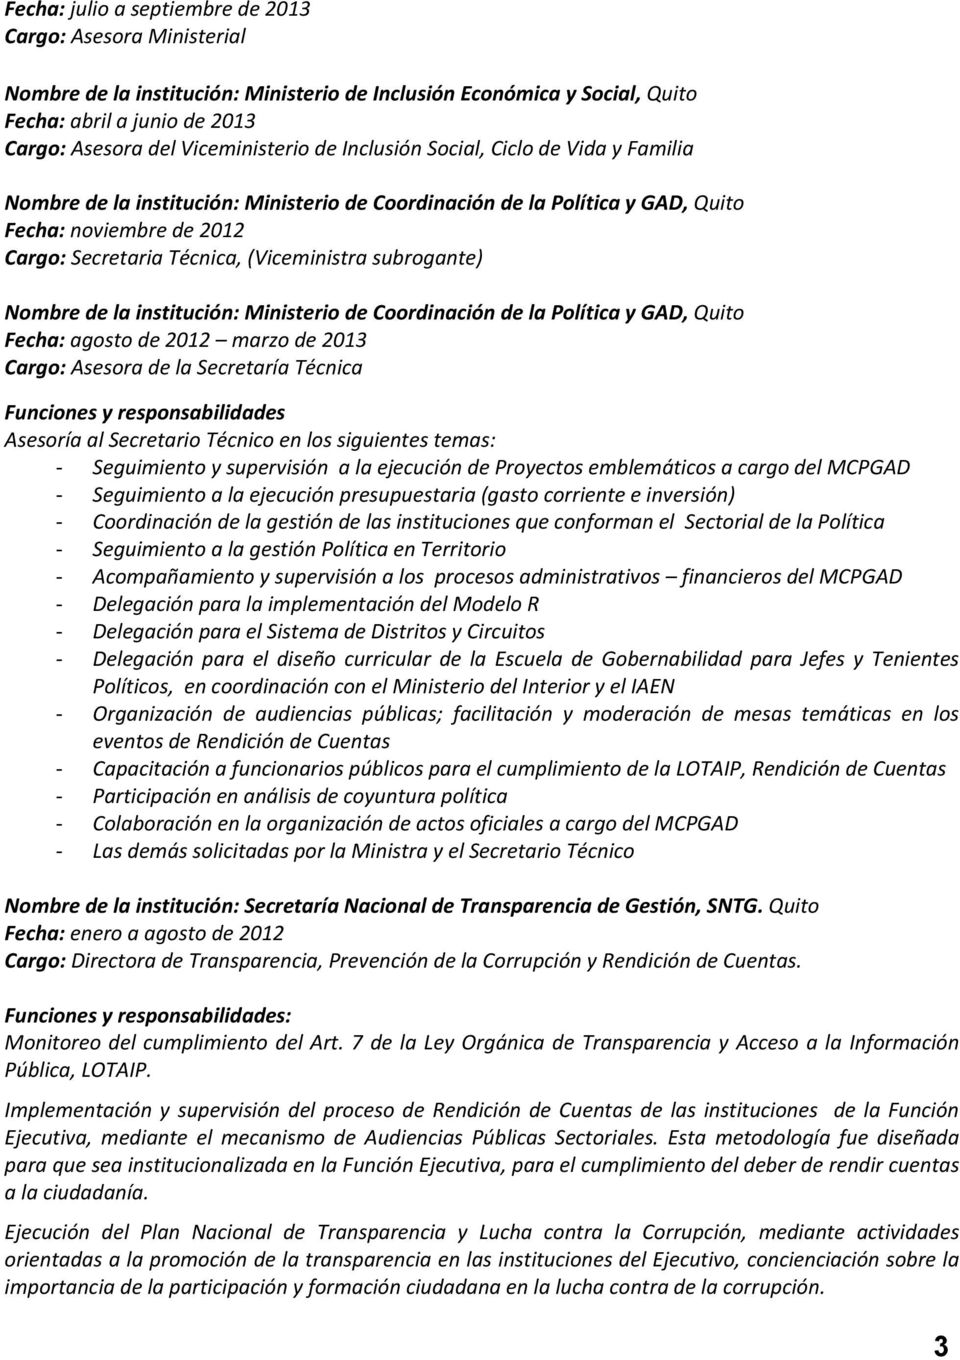 subrogante) Nombre de la institución: Ministerio de Coordinación de la Política y GAD, Quito Fecha: agosto de 2012 marzo de 2013 Cargo: Asesora de la Secretaría Técnica Funciones y responsabilidades